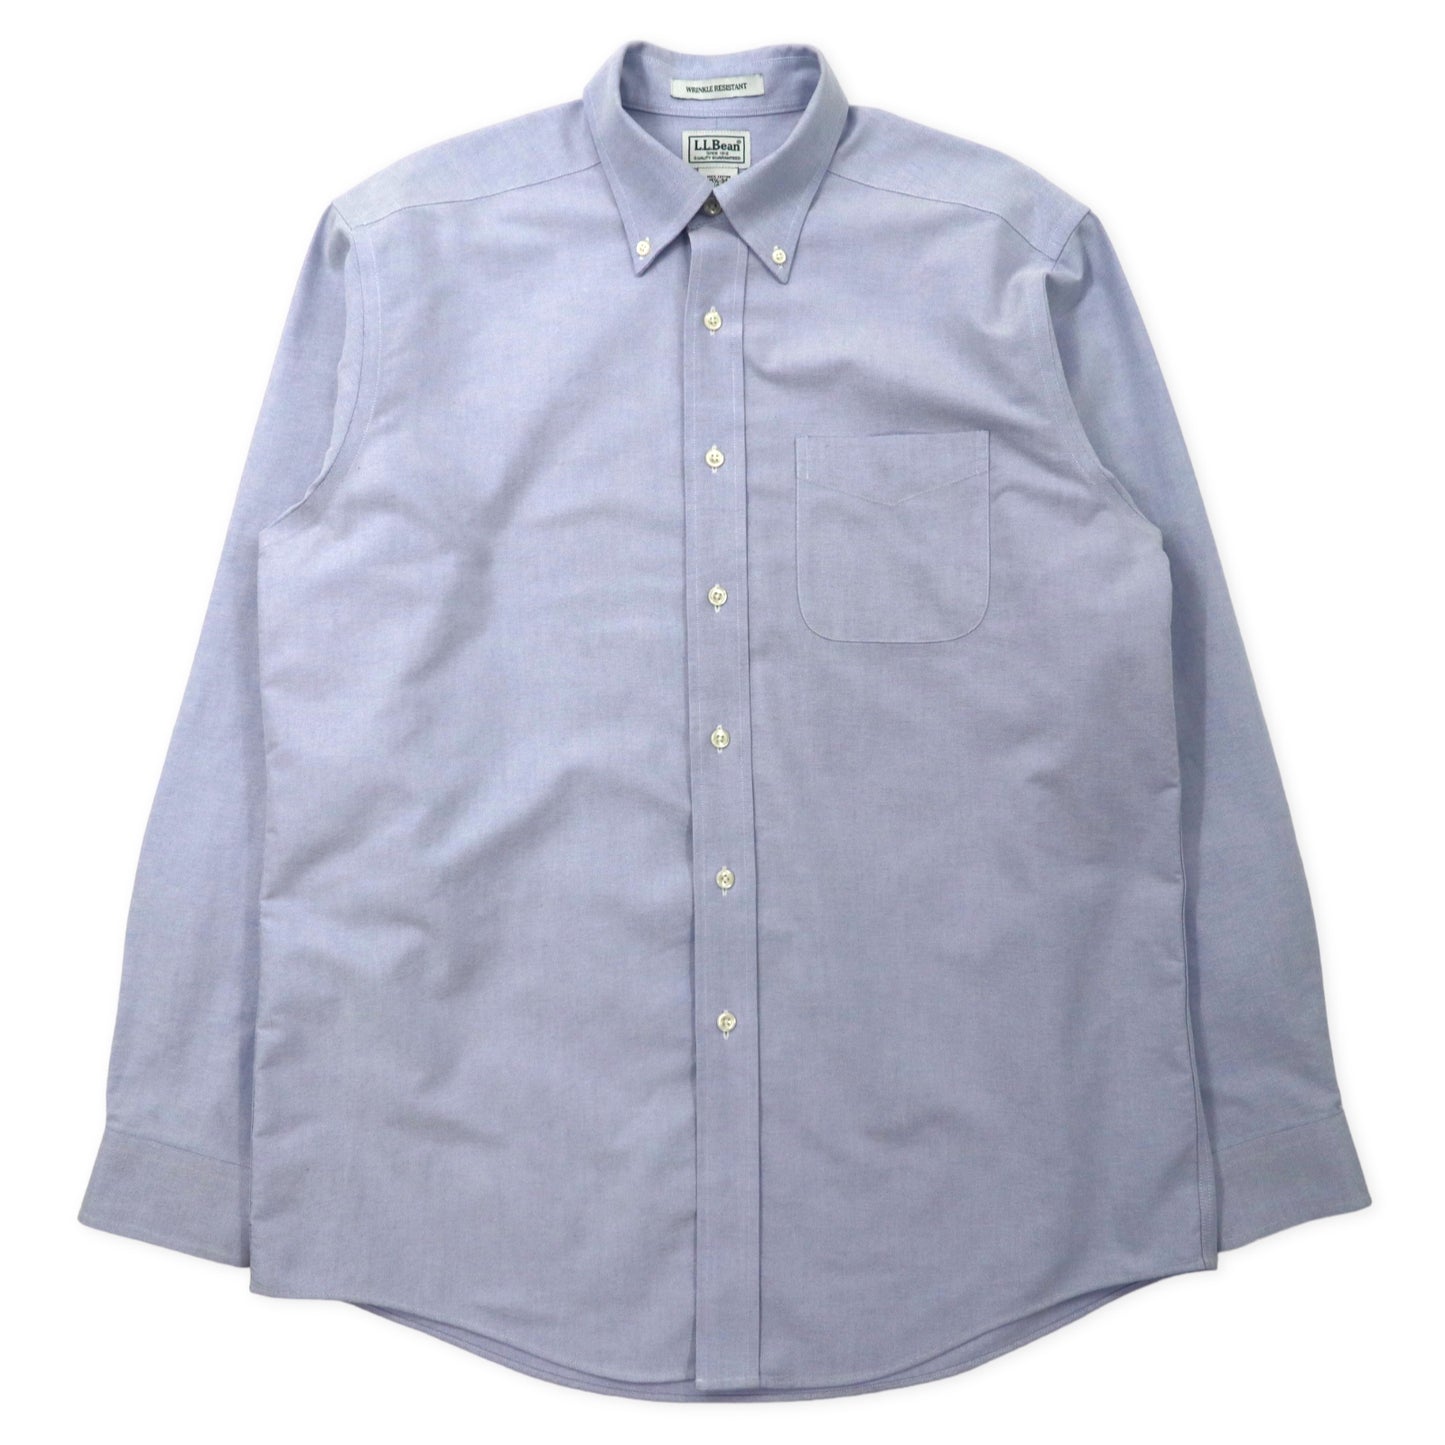 L.L.Bean Oxford Button -Down Shirts 15 1/2-34 Blue Cotton Wrinkle ...